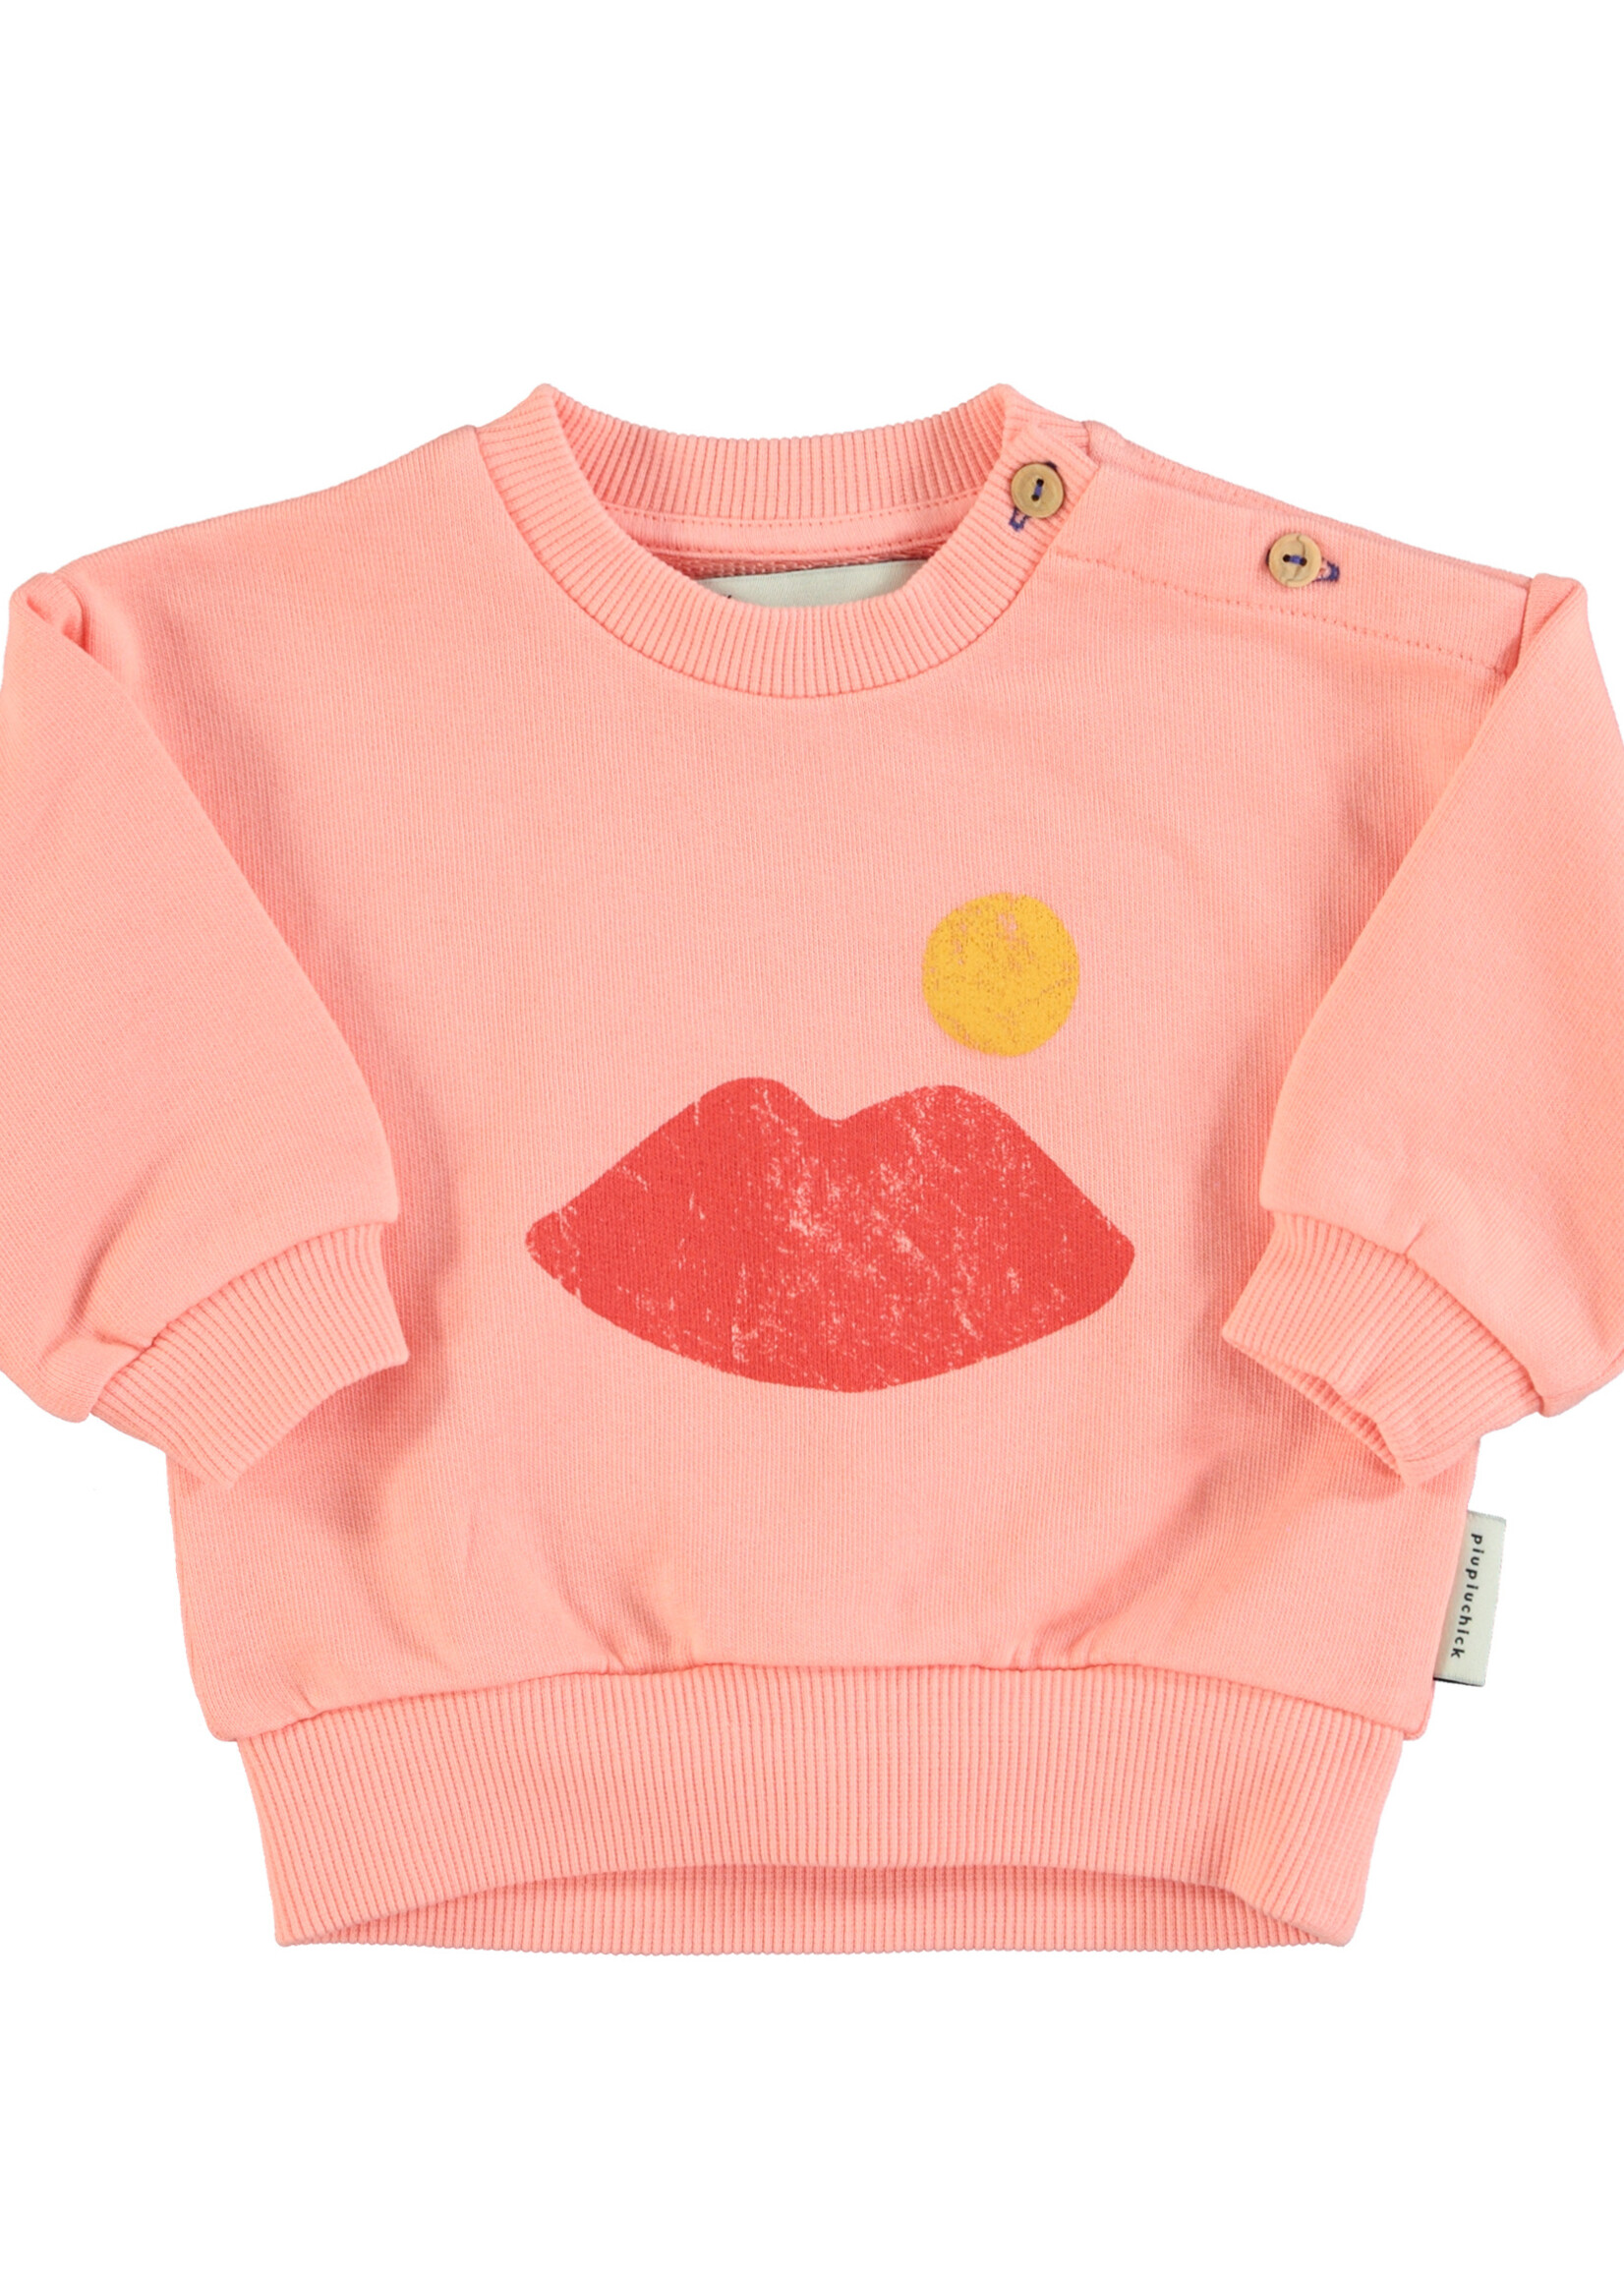 Piupiuchick Sweatshirt Coral with lips print - Piupiuchick